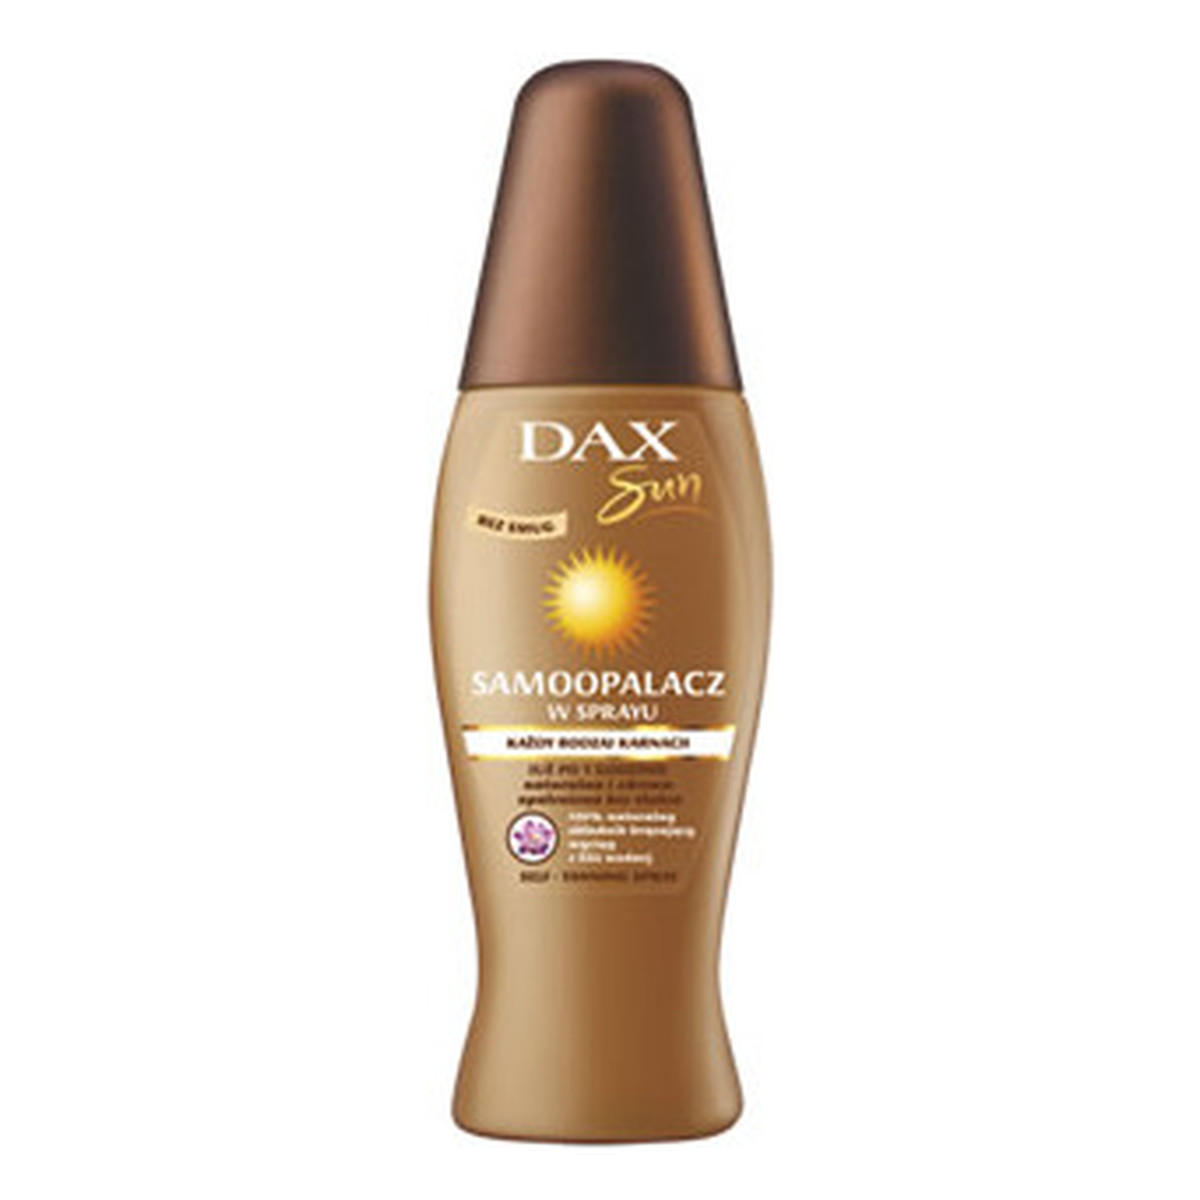 Dax Sun Samoopalacz w Sprayu Każdy Rodzaj Karnacji 150ml